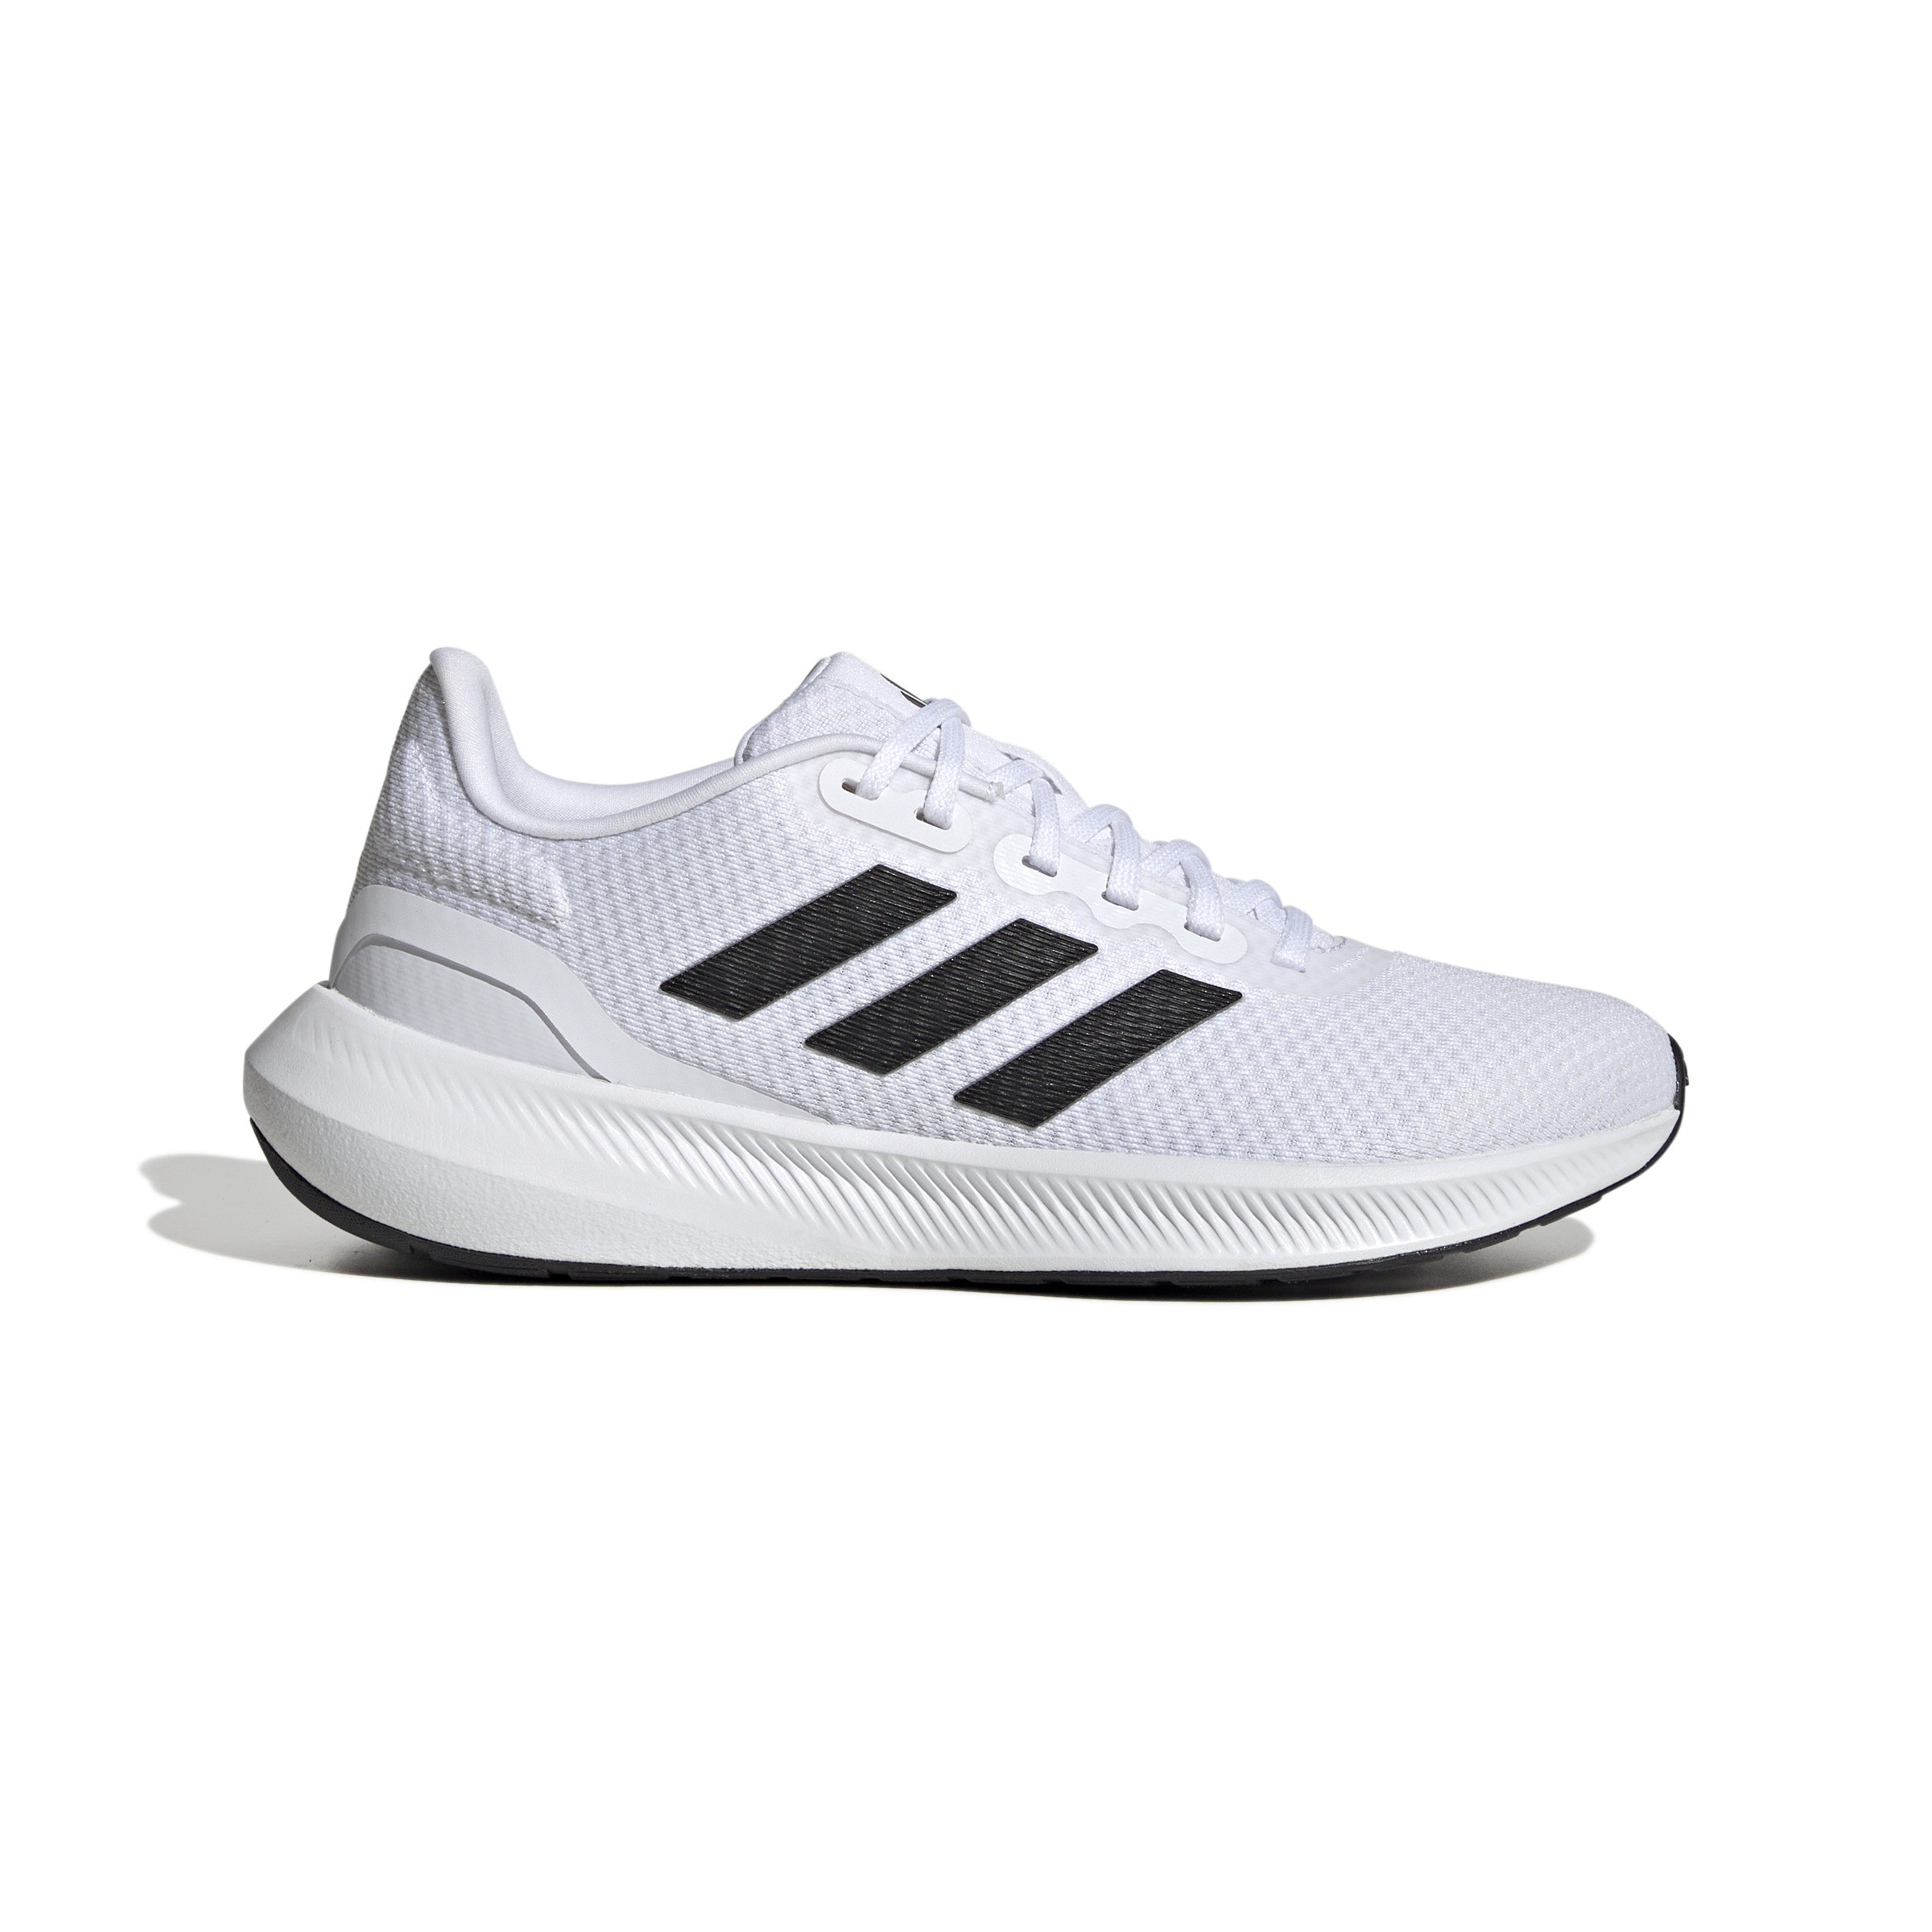 Adidas - Scarpe Runfalcon 3, Bianco, large image number 0